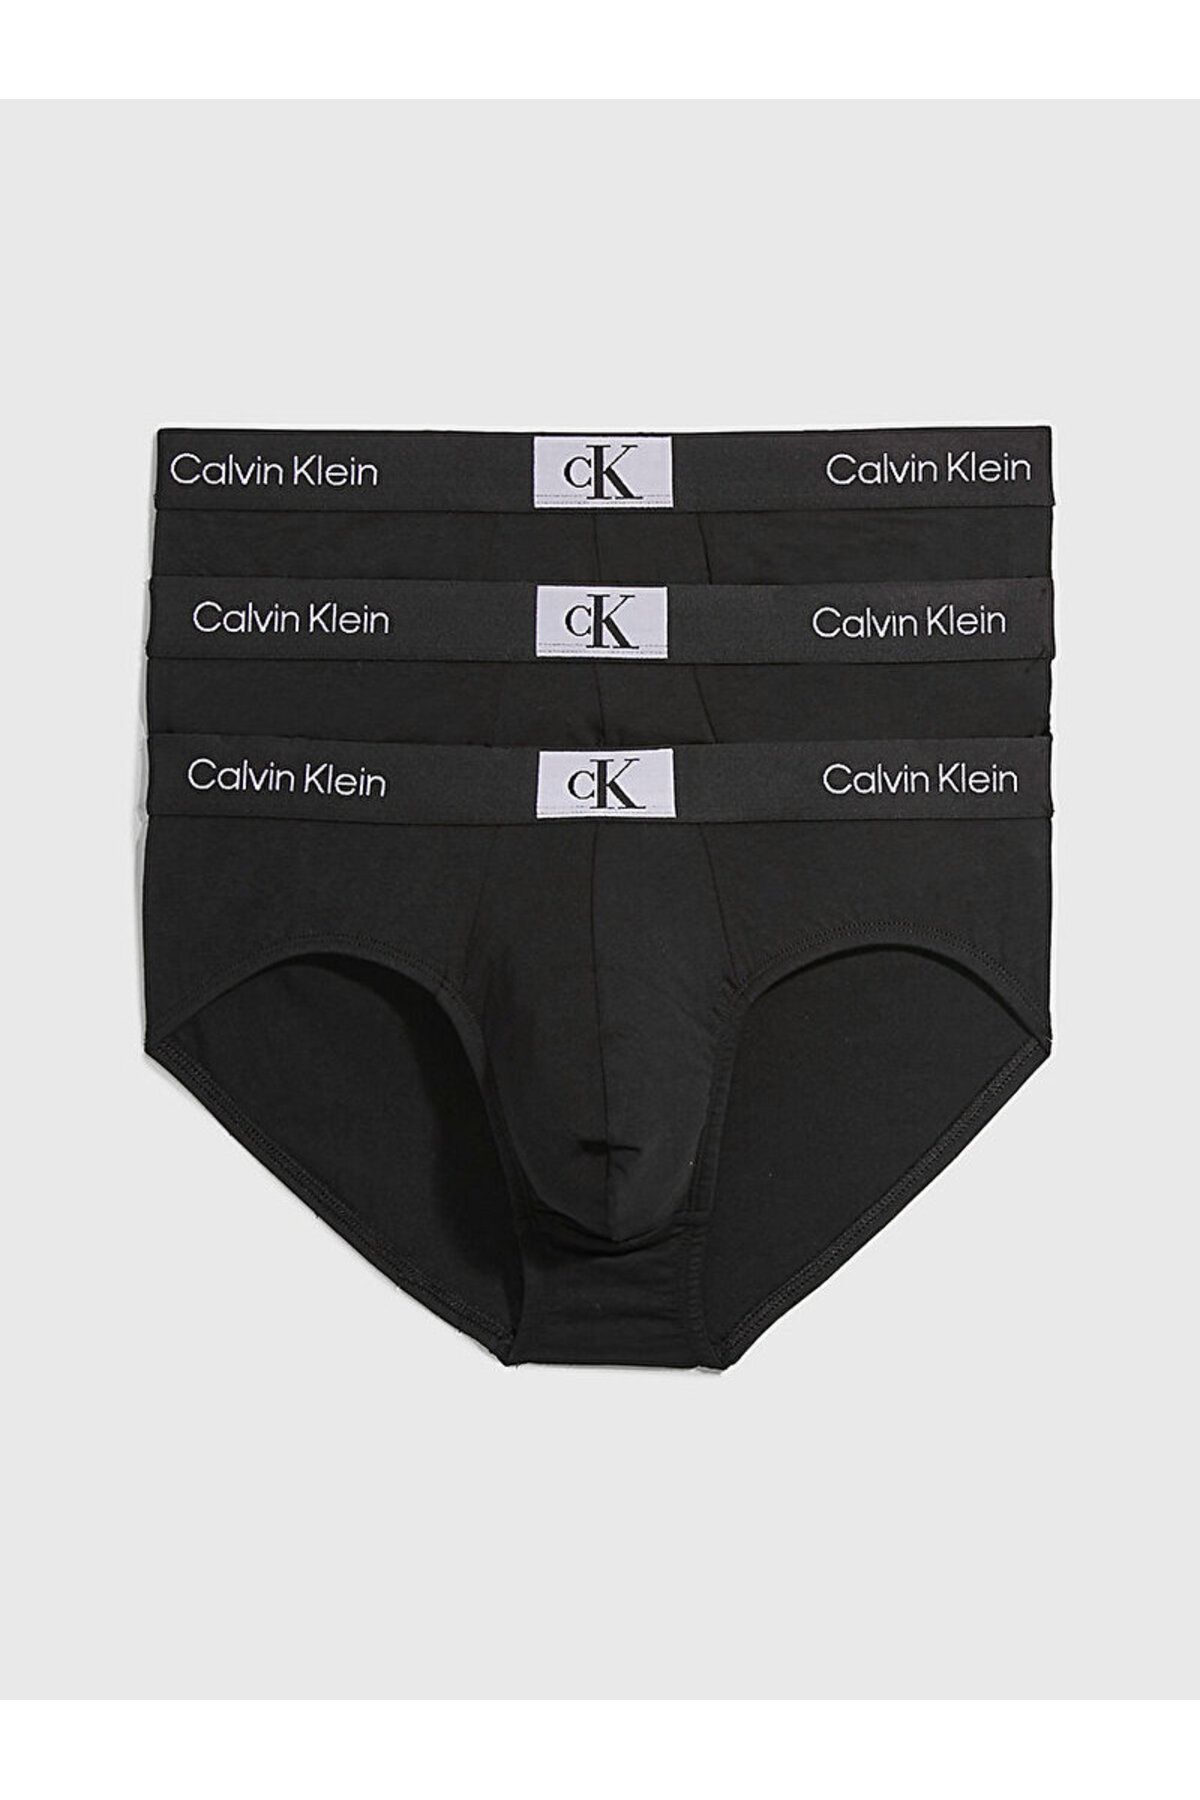 Calvin Klein Erkek Imzalı Elastik Bantlı Siyah Külot 000nb3527a-ub1